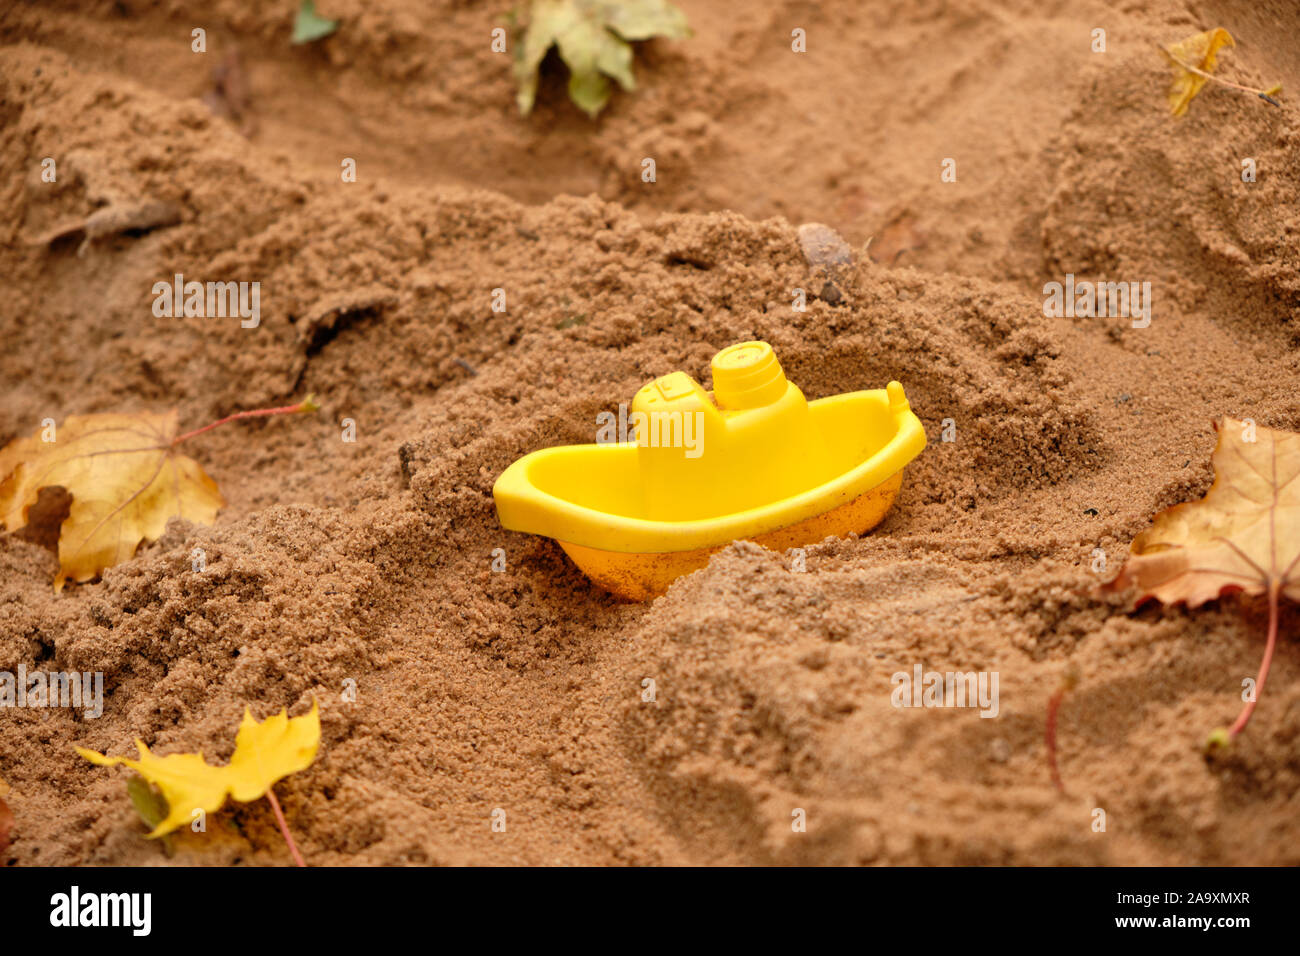 Petit bateau jouet en plastique jaune est dirving à travers le sable avec les feuilles d'automne dans la carrière de sable sur une aire de jeux Banque D'Images